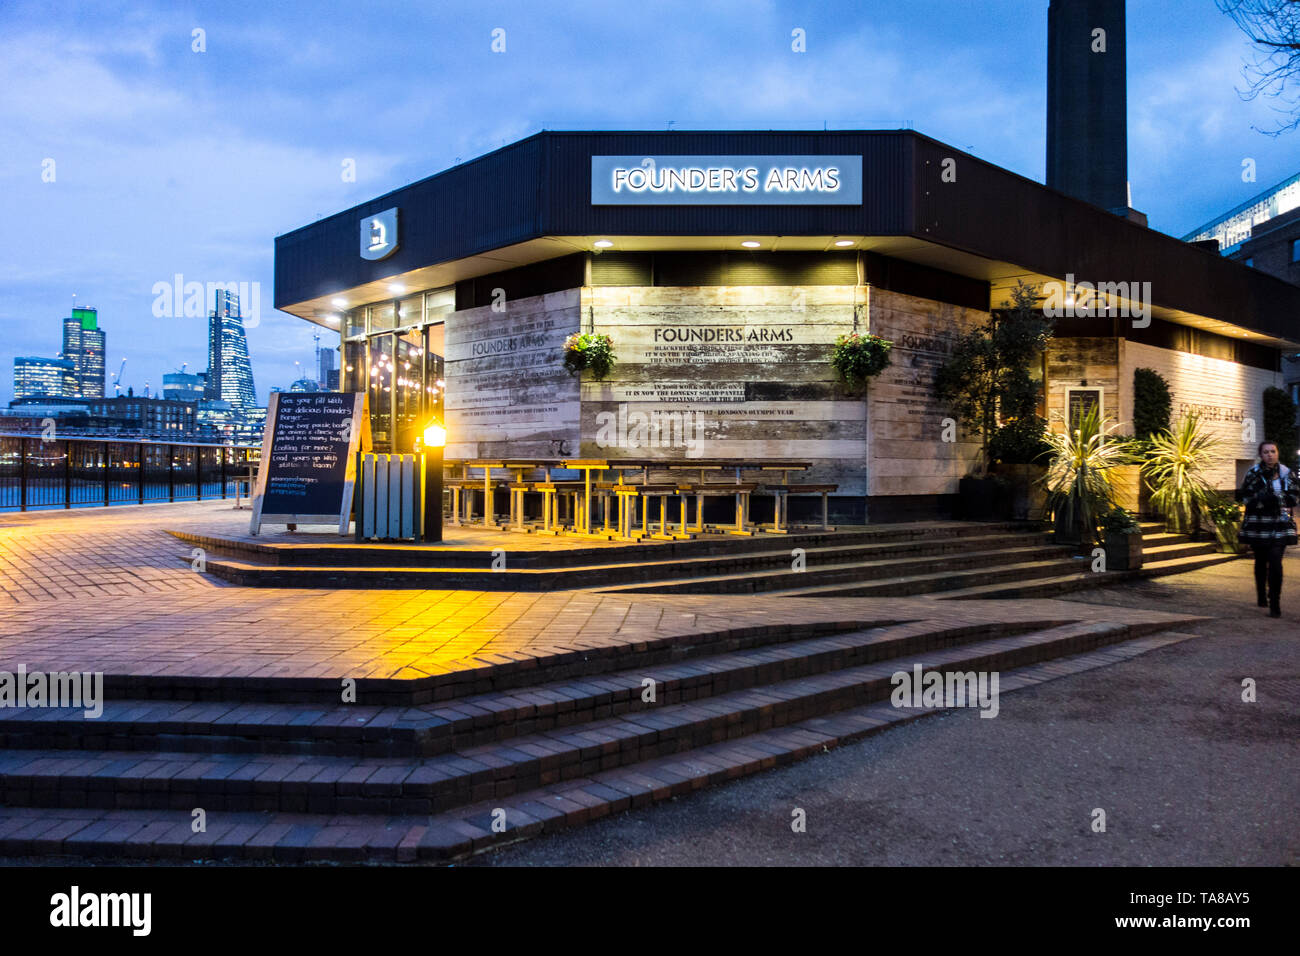 11 janvier 2017, Southbank, Londres. Les Armes du fondateur public house pub sur la rive sud de la nuit. London, Southwark, UK Banque D'Images